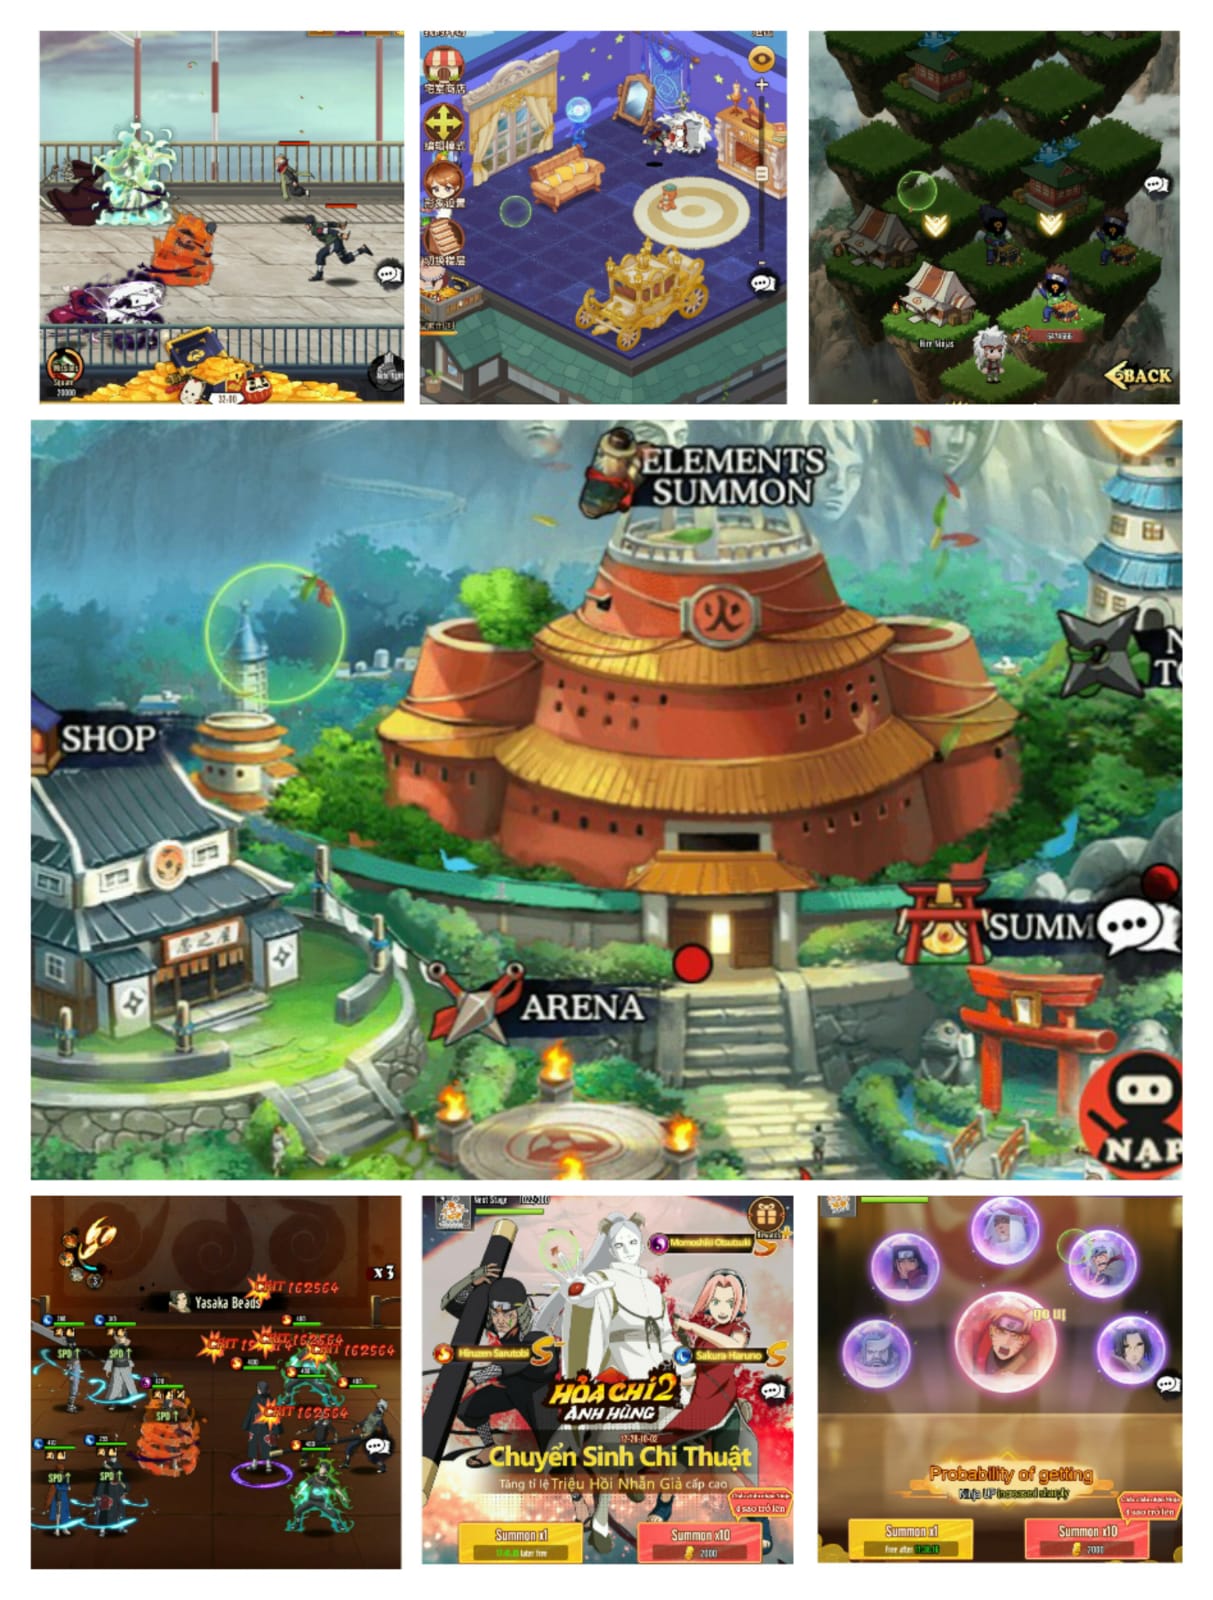 Naruto Online Gameplay - Free VIP15 & 4 Giftcodes & 300K Diamonds